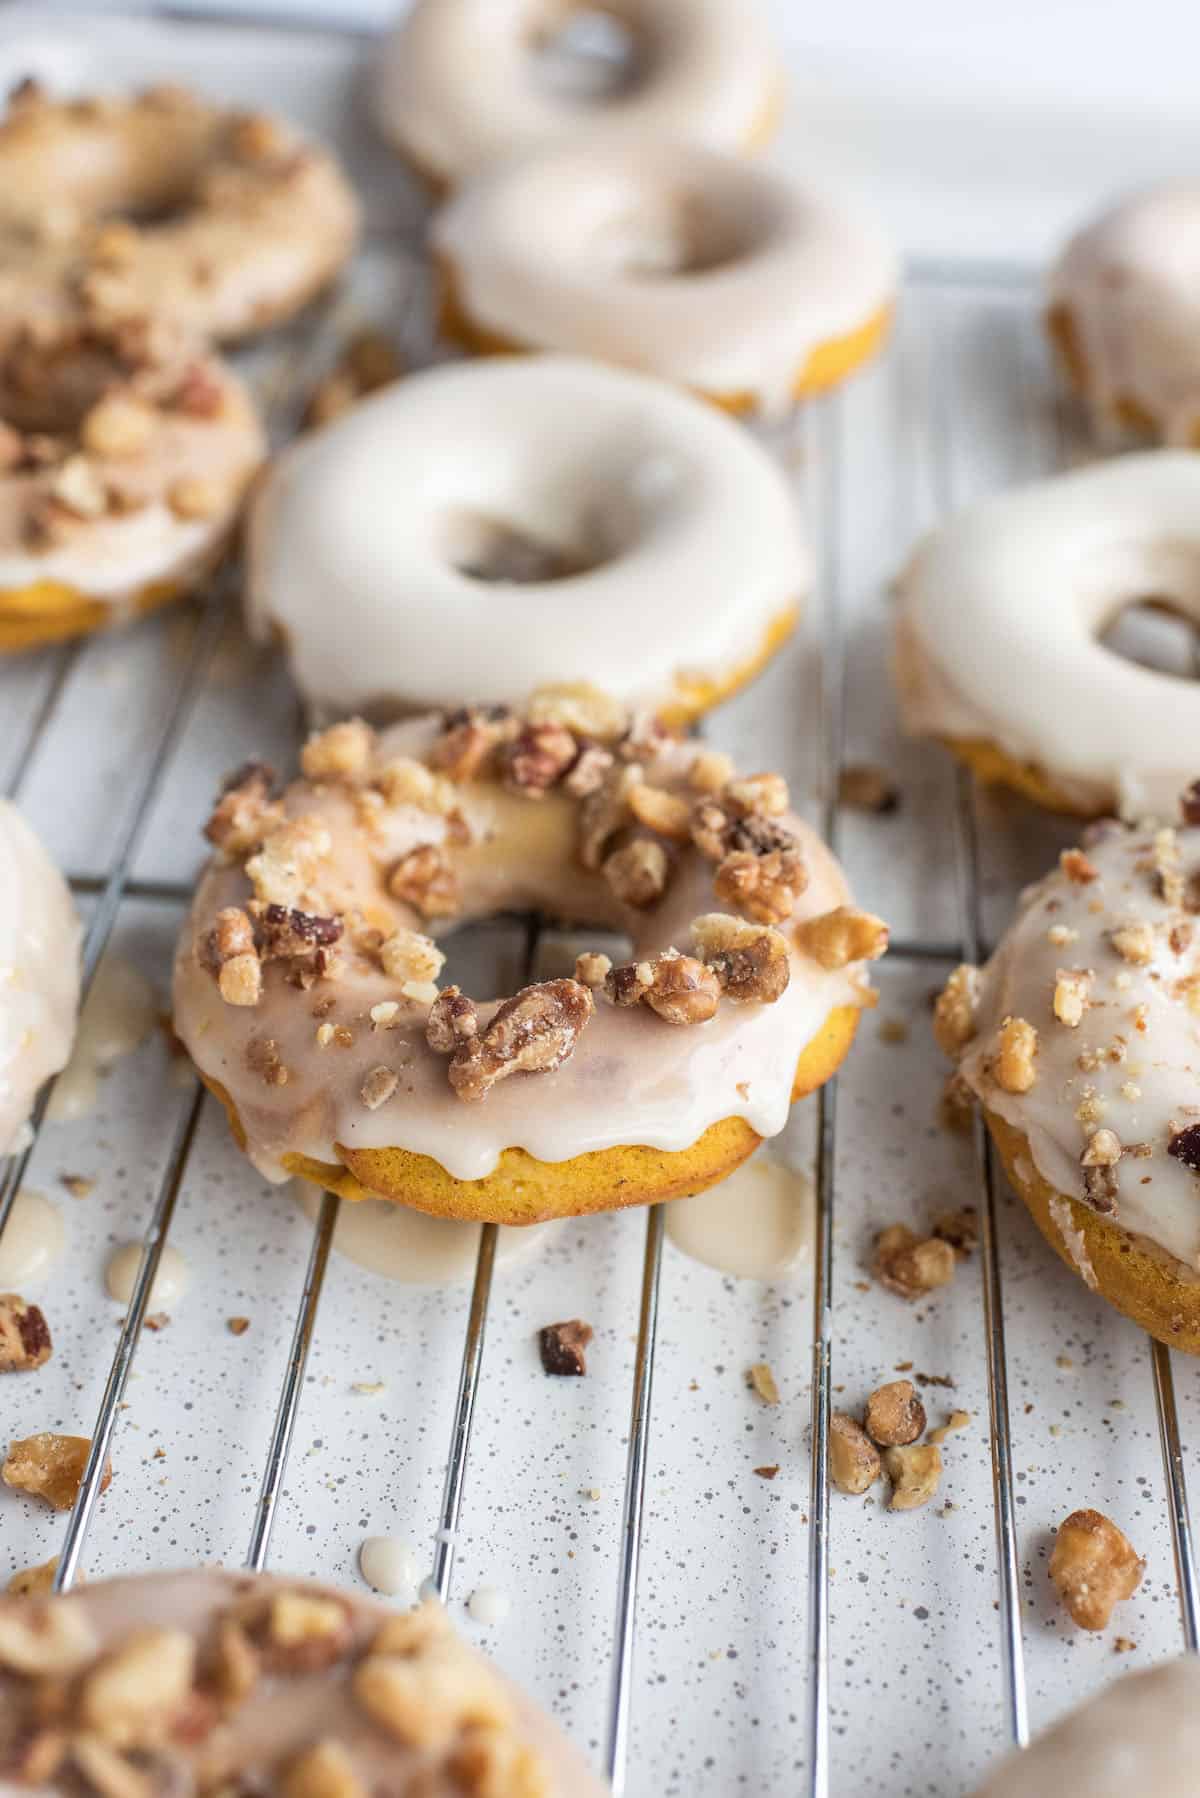 sprinkle glazed donuts with walnuts